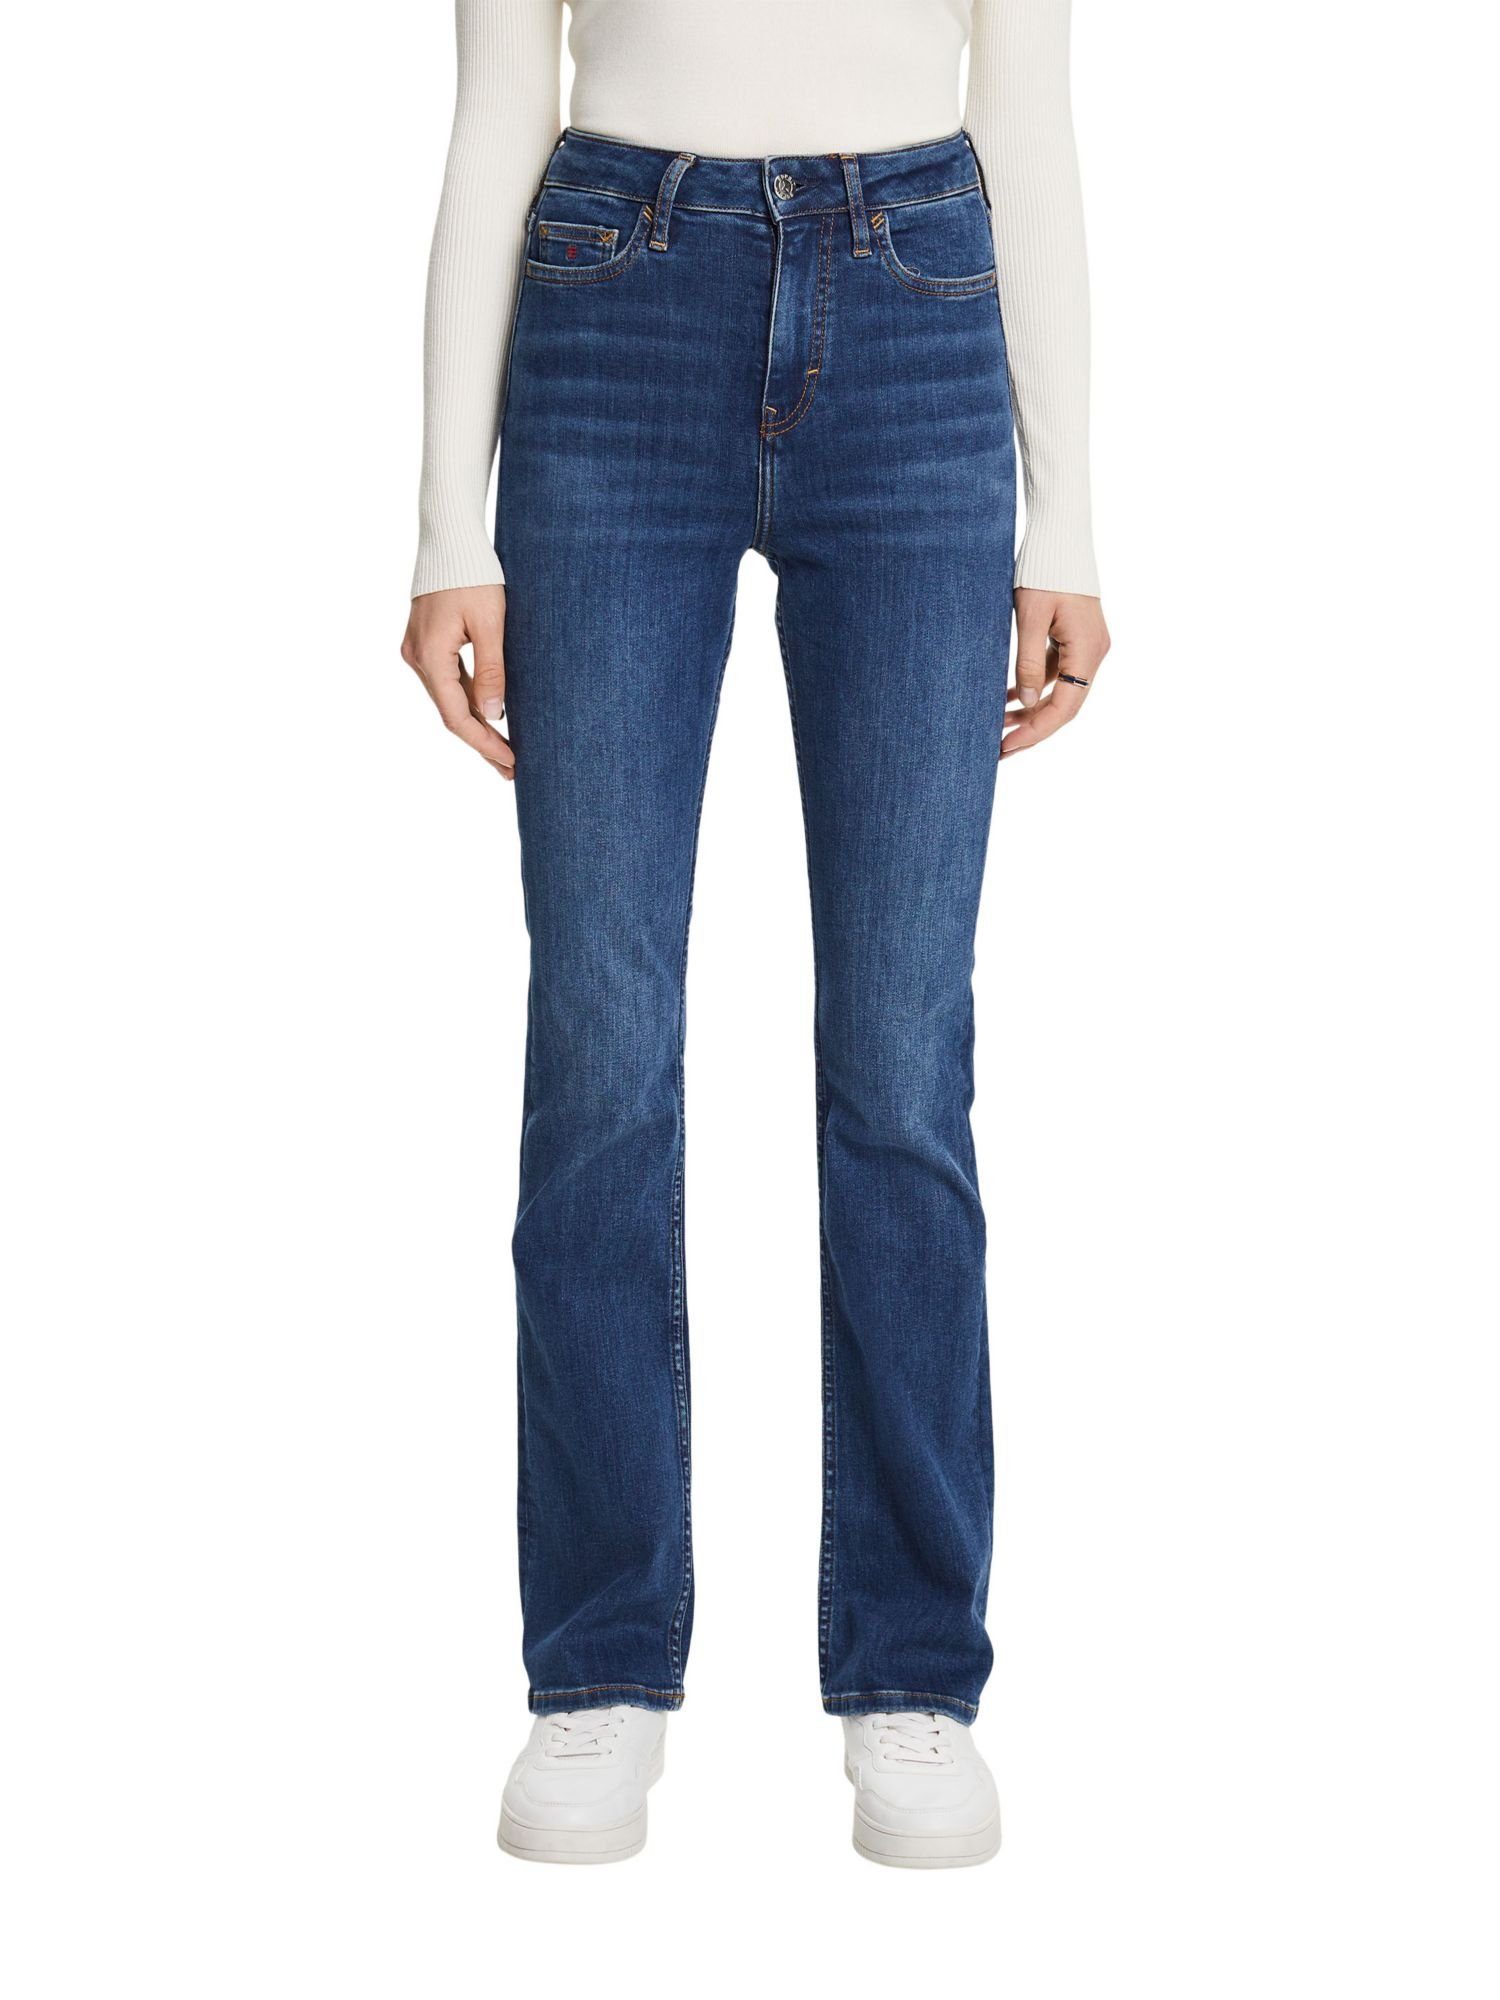 Bootcut-Jeans hohem mit Esprit Bund Premium-Bootcut Jeans